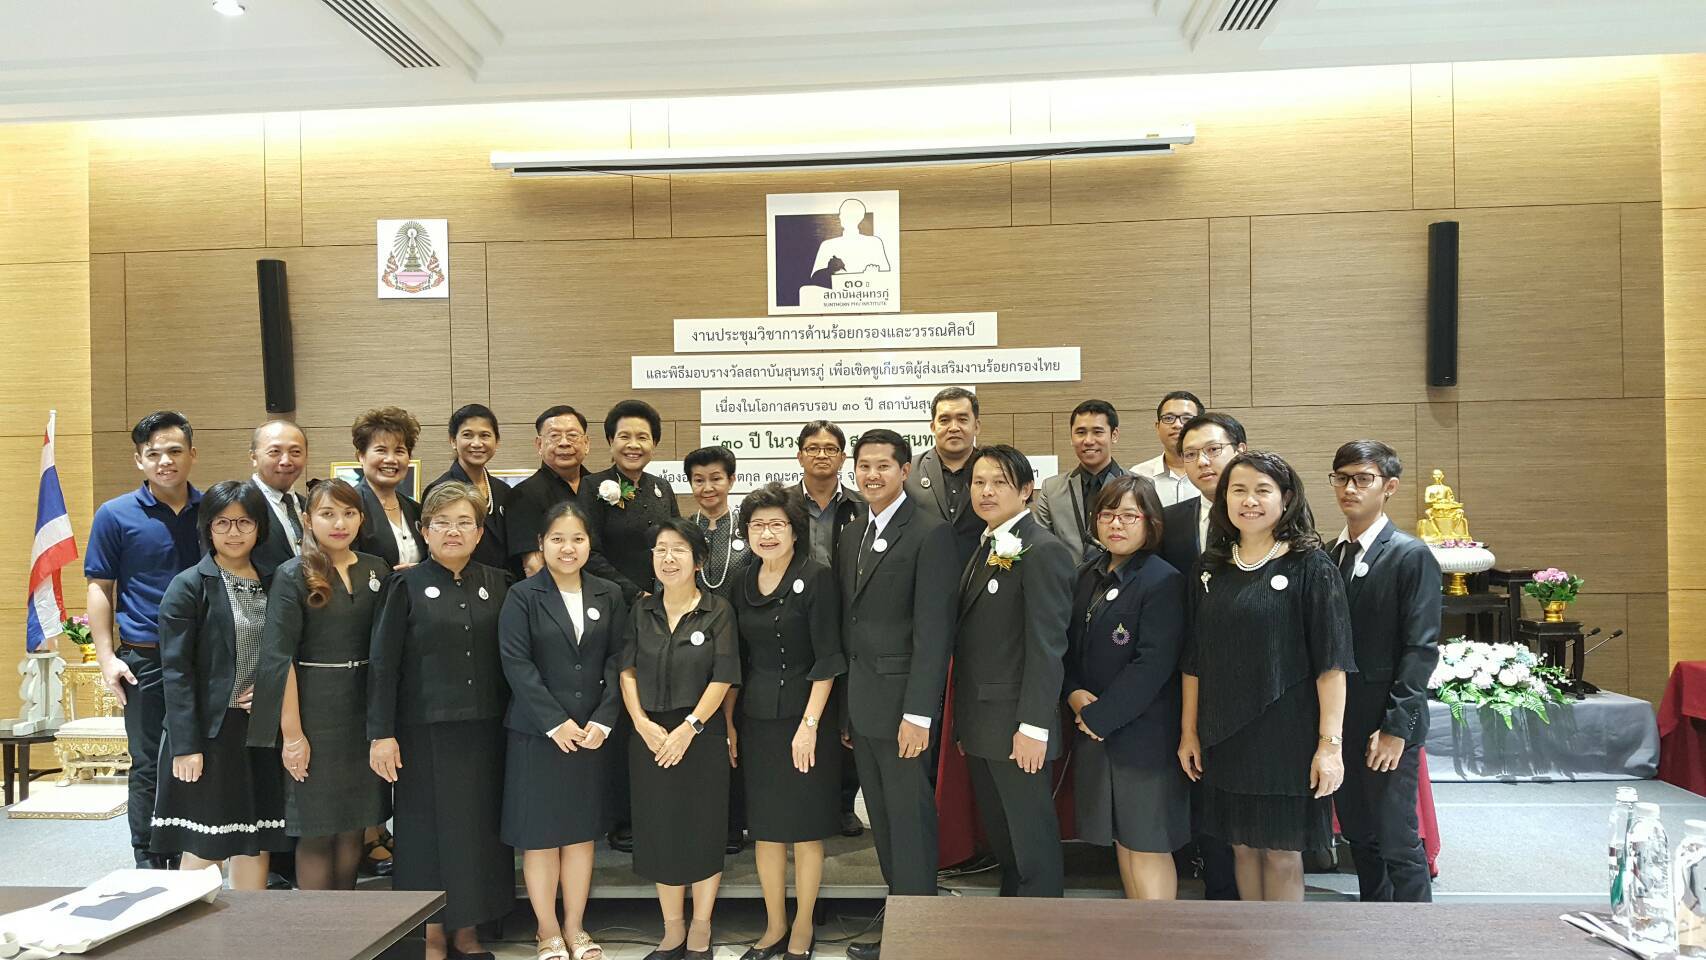 "สถาบันสุนทรภู่ ครบรอบ 30 ปี" มอบรางวัลเชิดชูเกียรติ ผู้ส่งเสริมร้อยกรองไทย